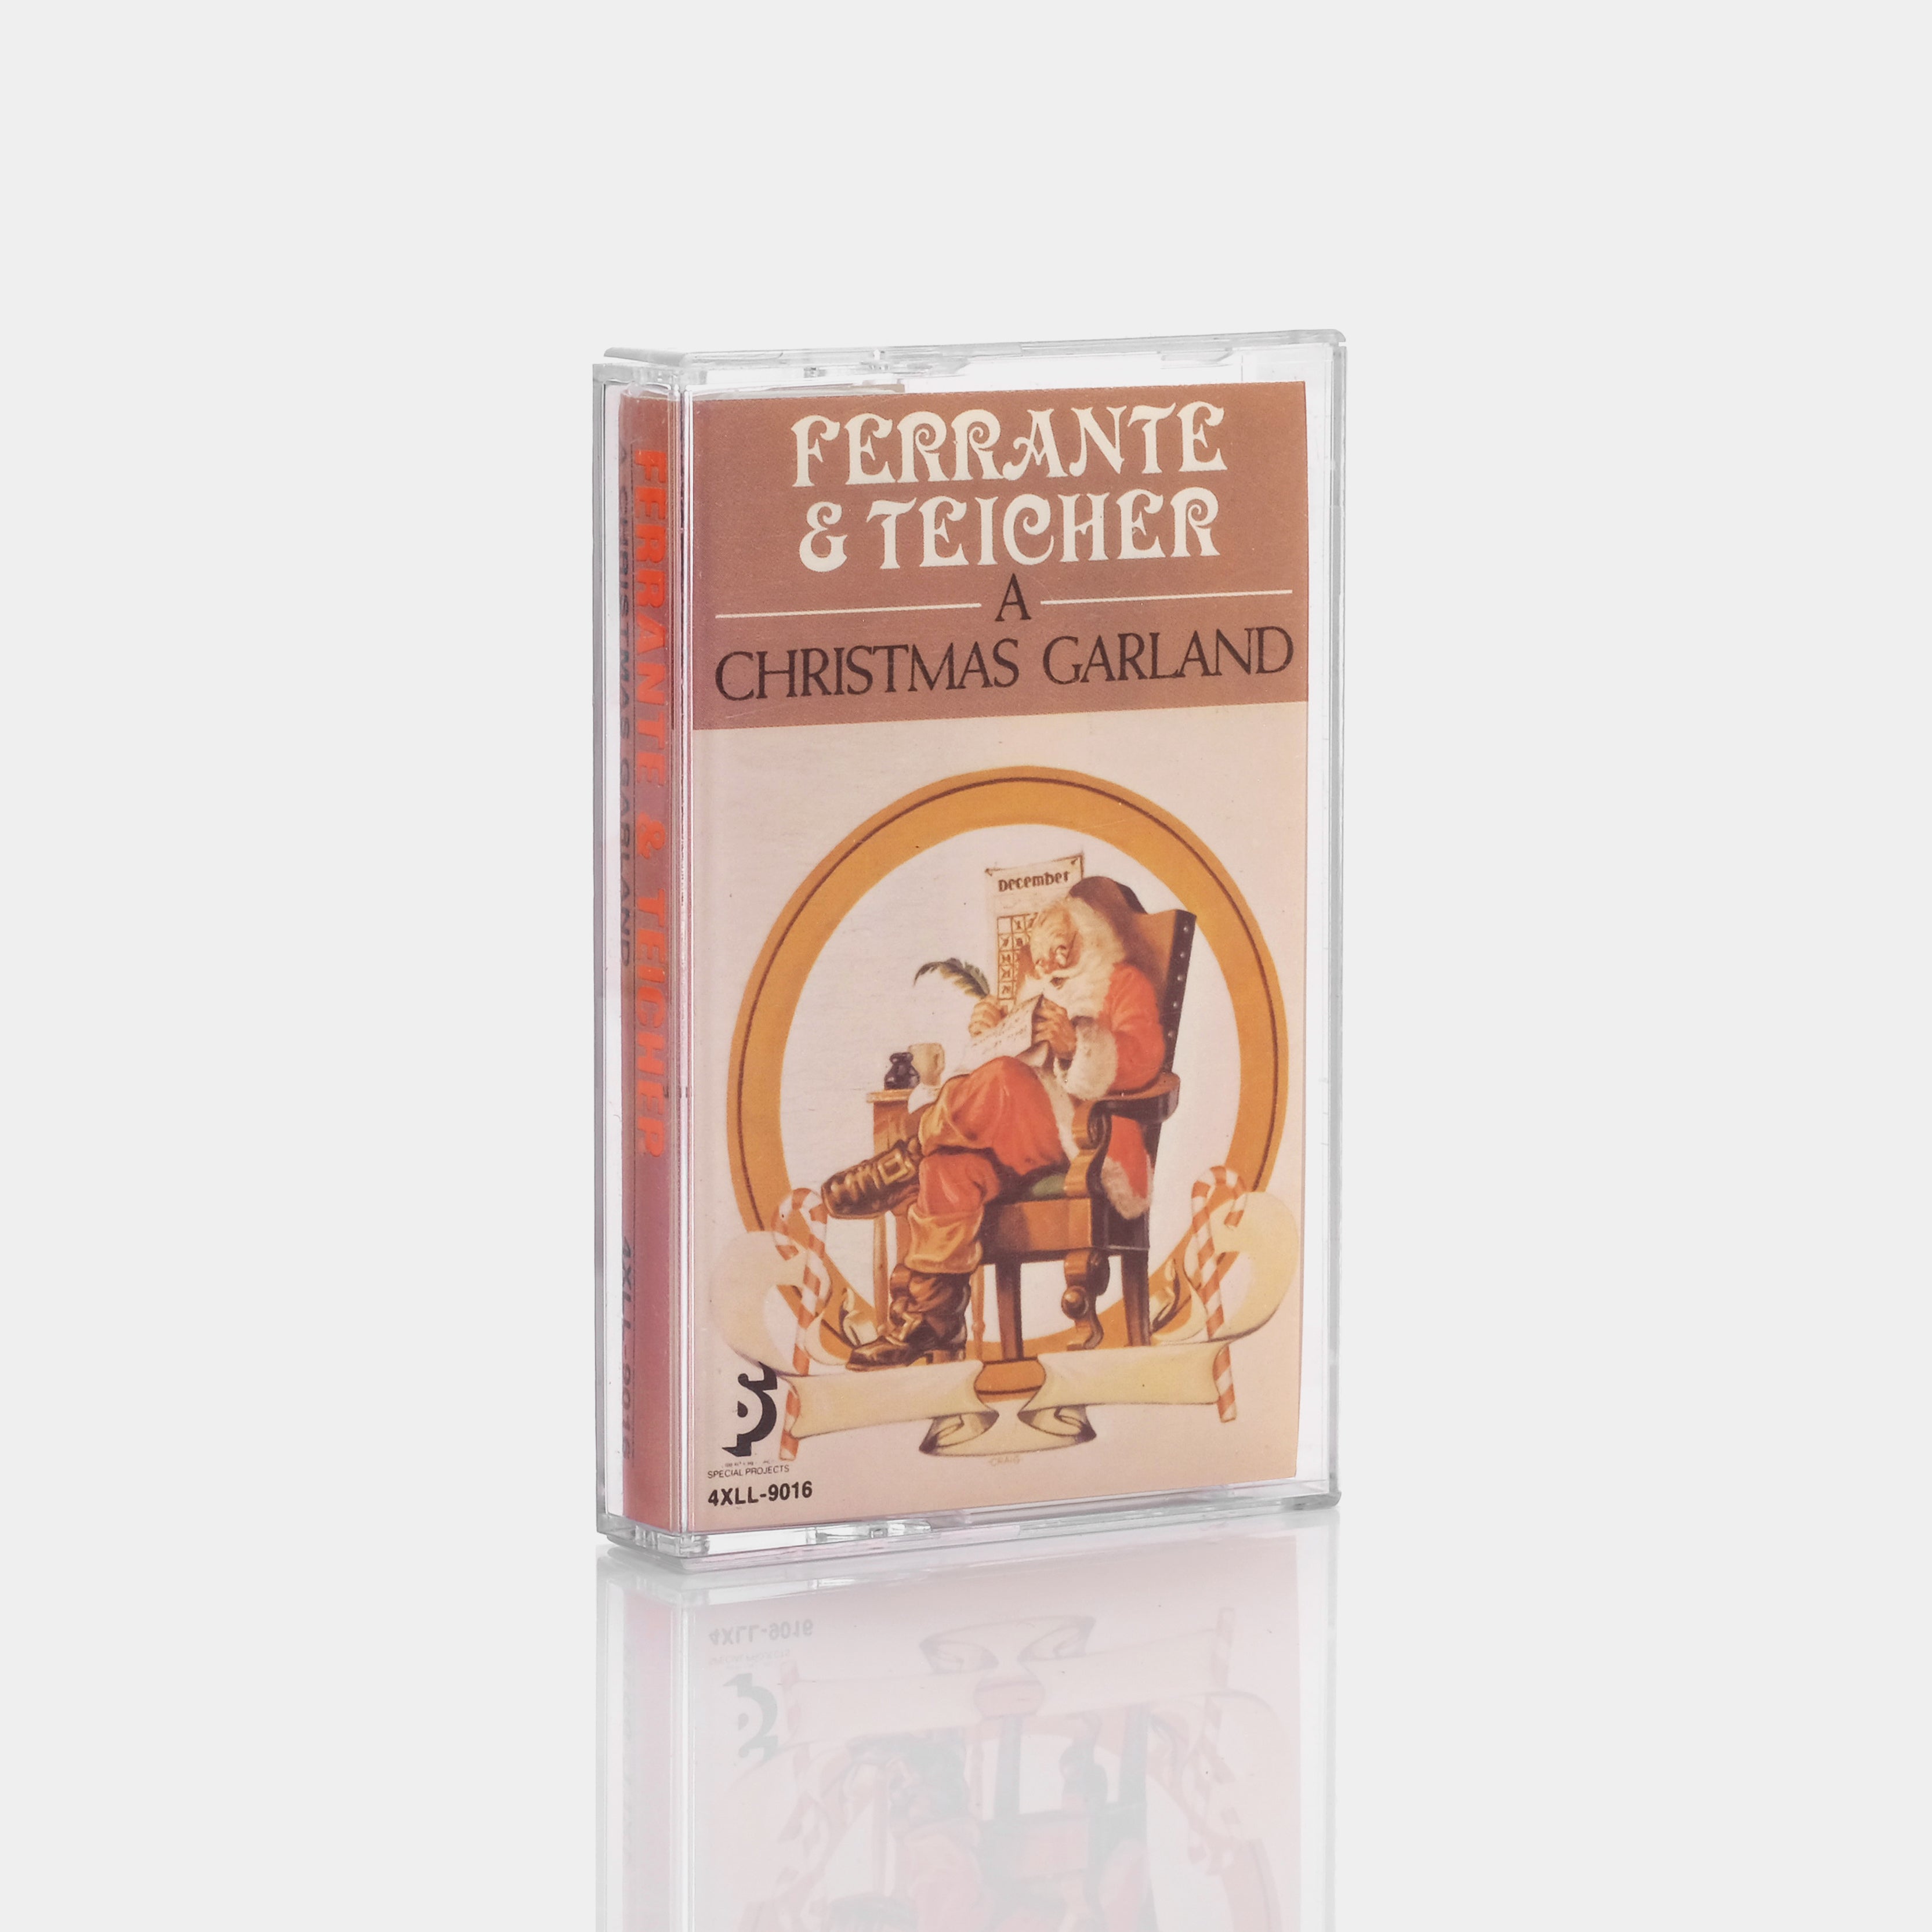 Ferrante & Teicher - A Christmas Garland Cassette Tape